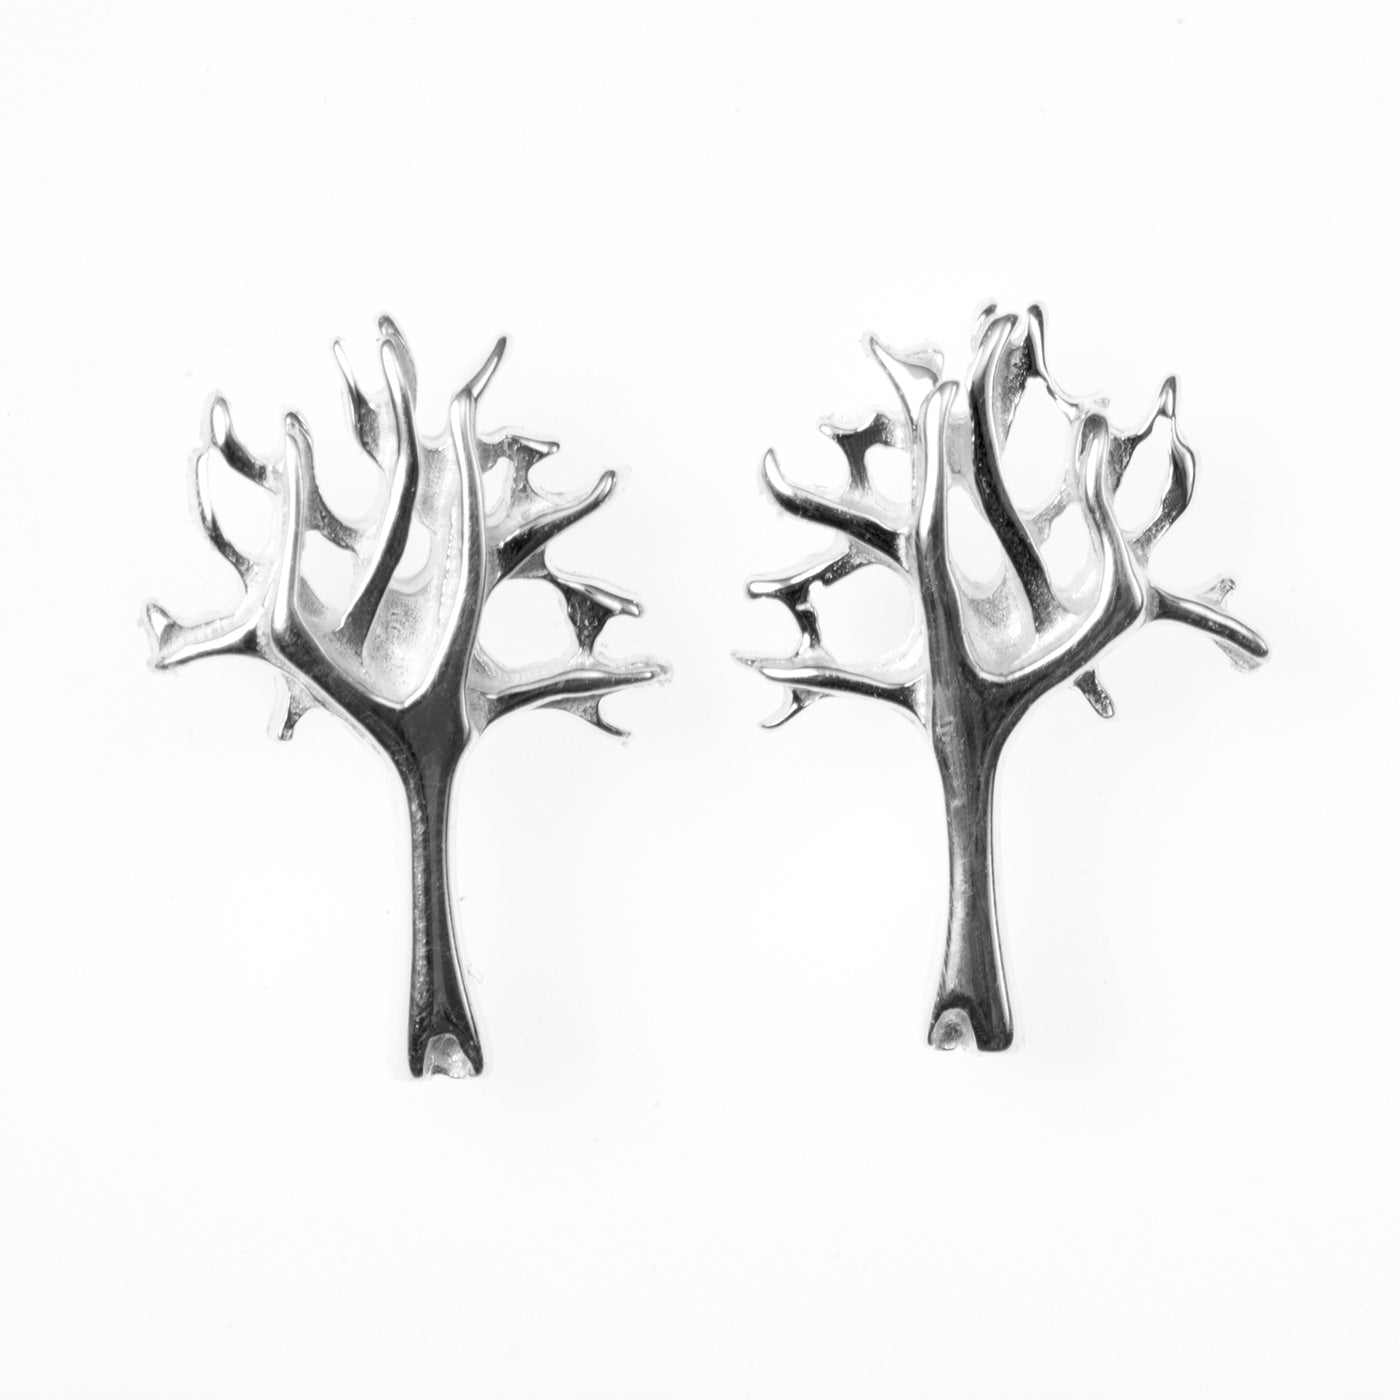 Silver Tree Stud Earrings